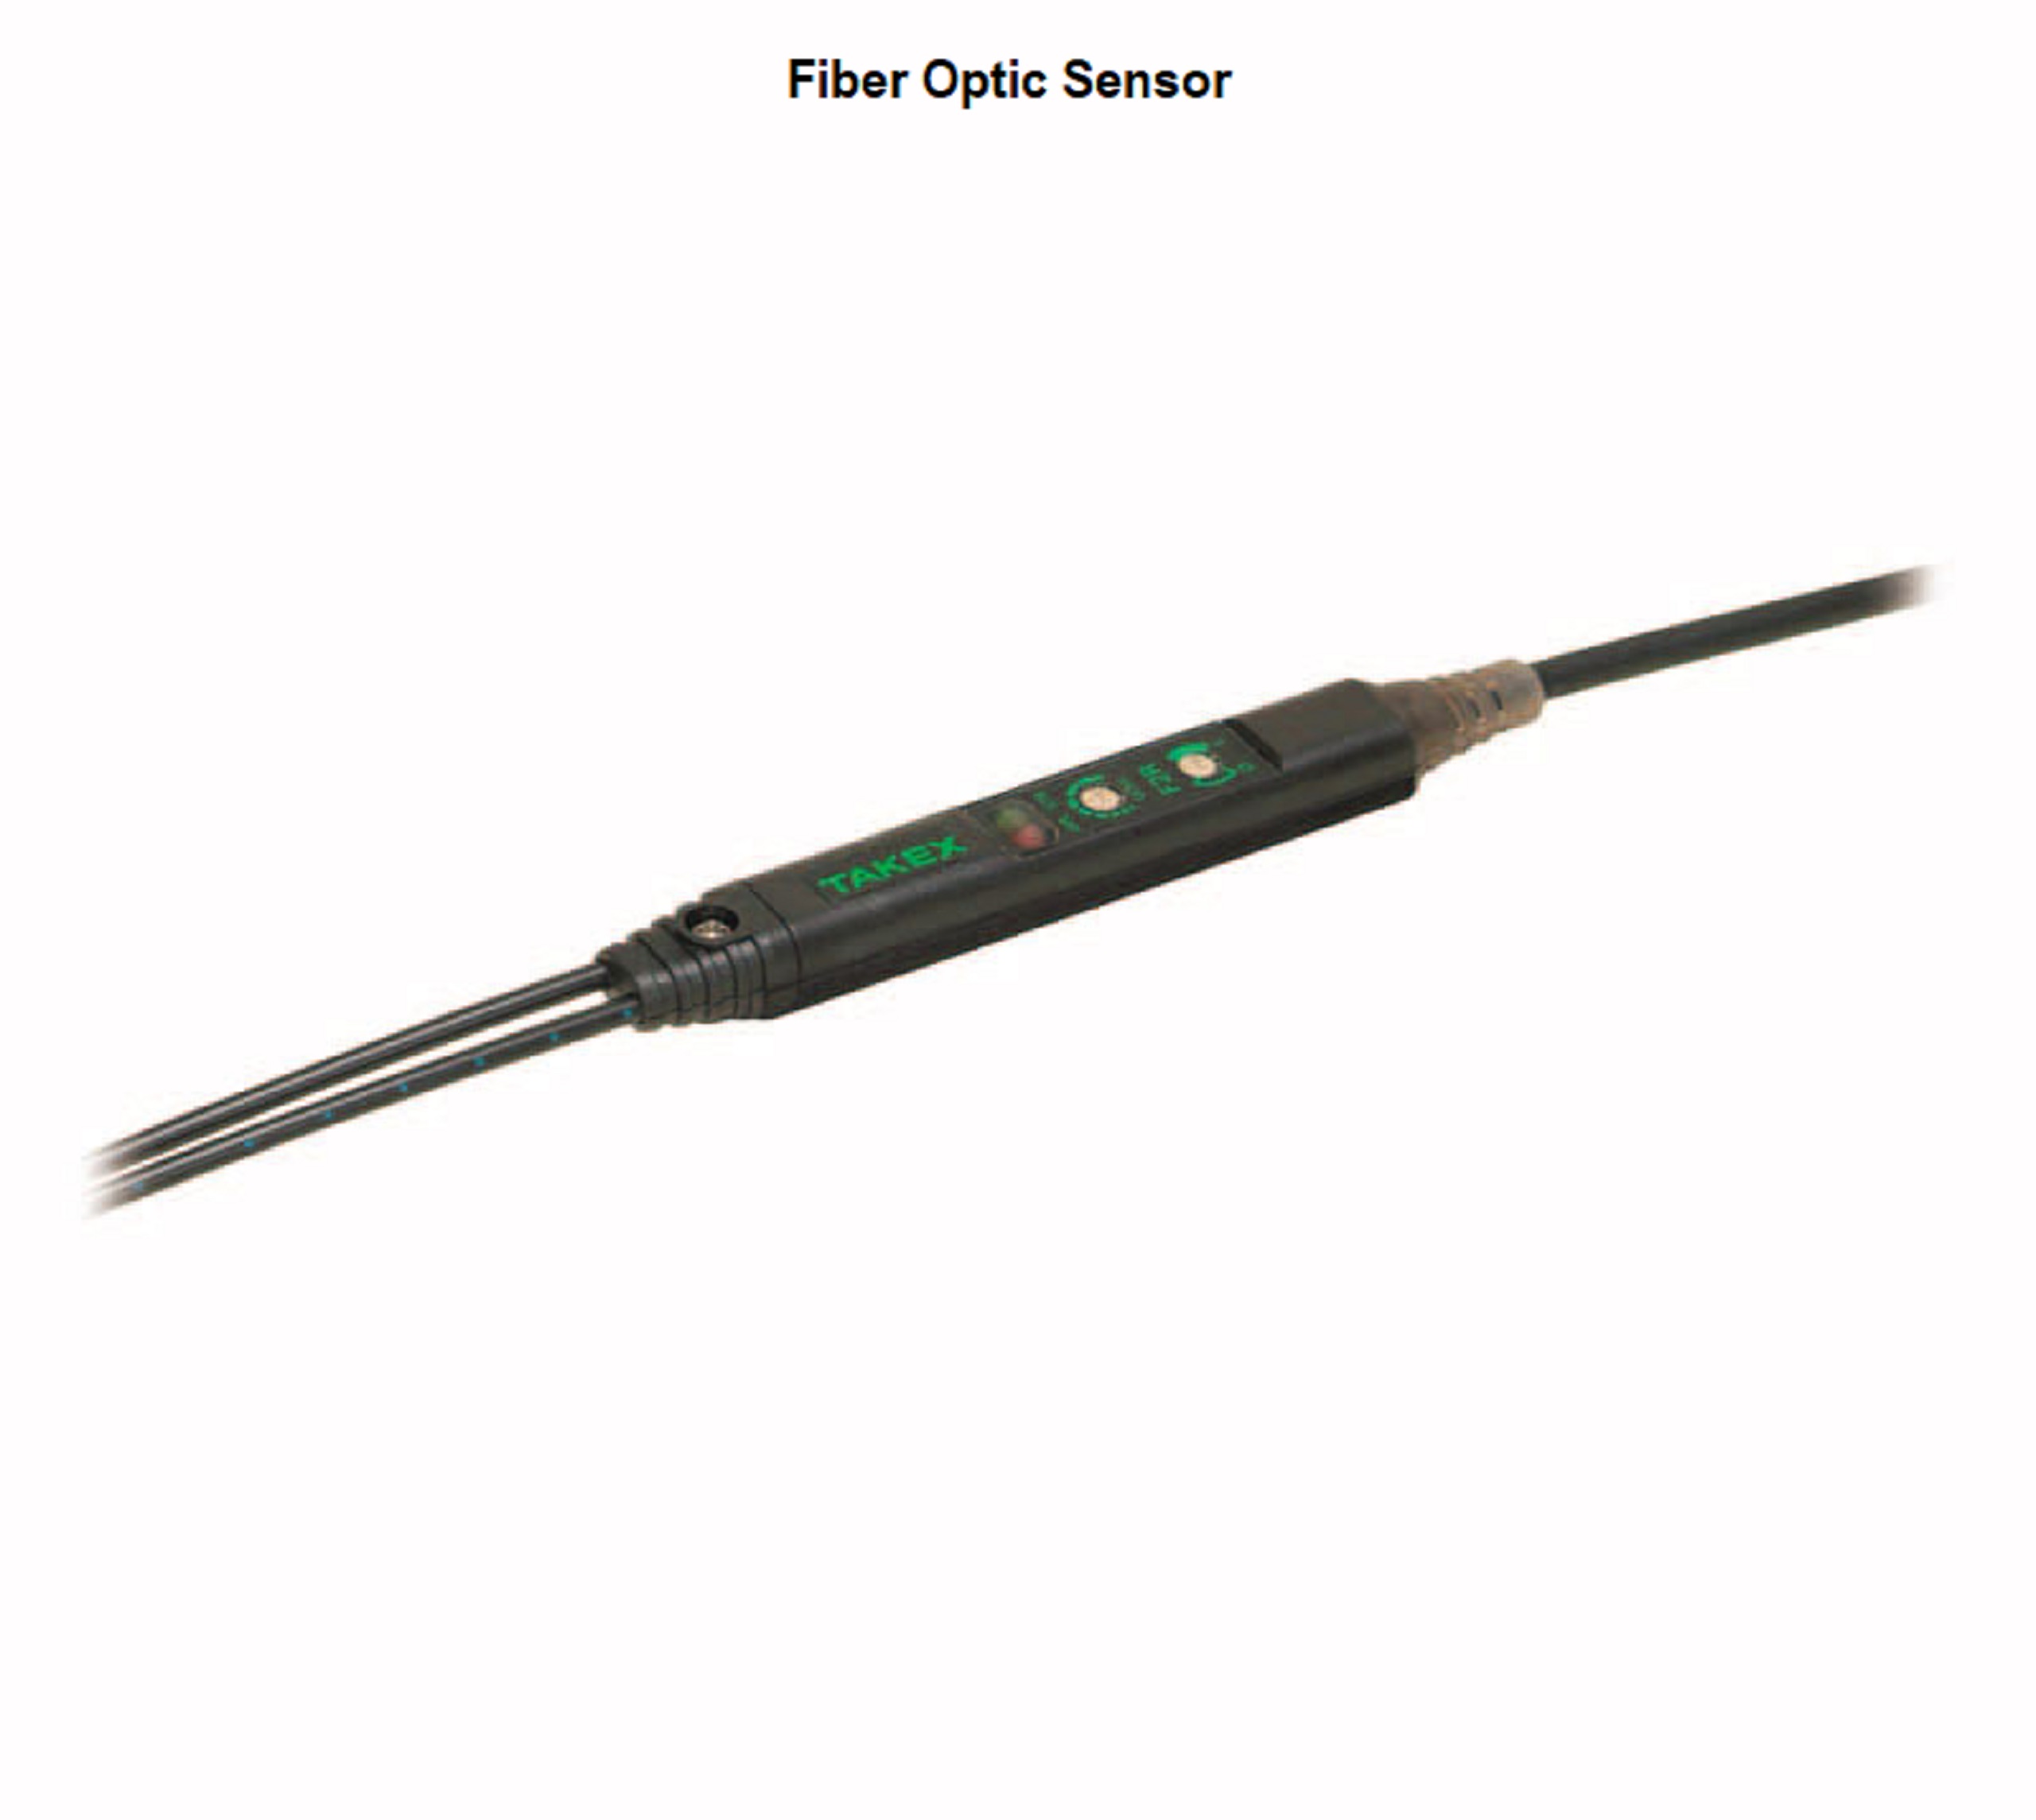 Fiber Optic Cables & Sensors